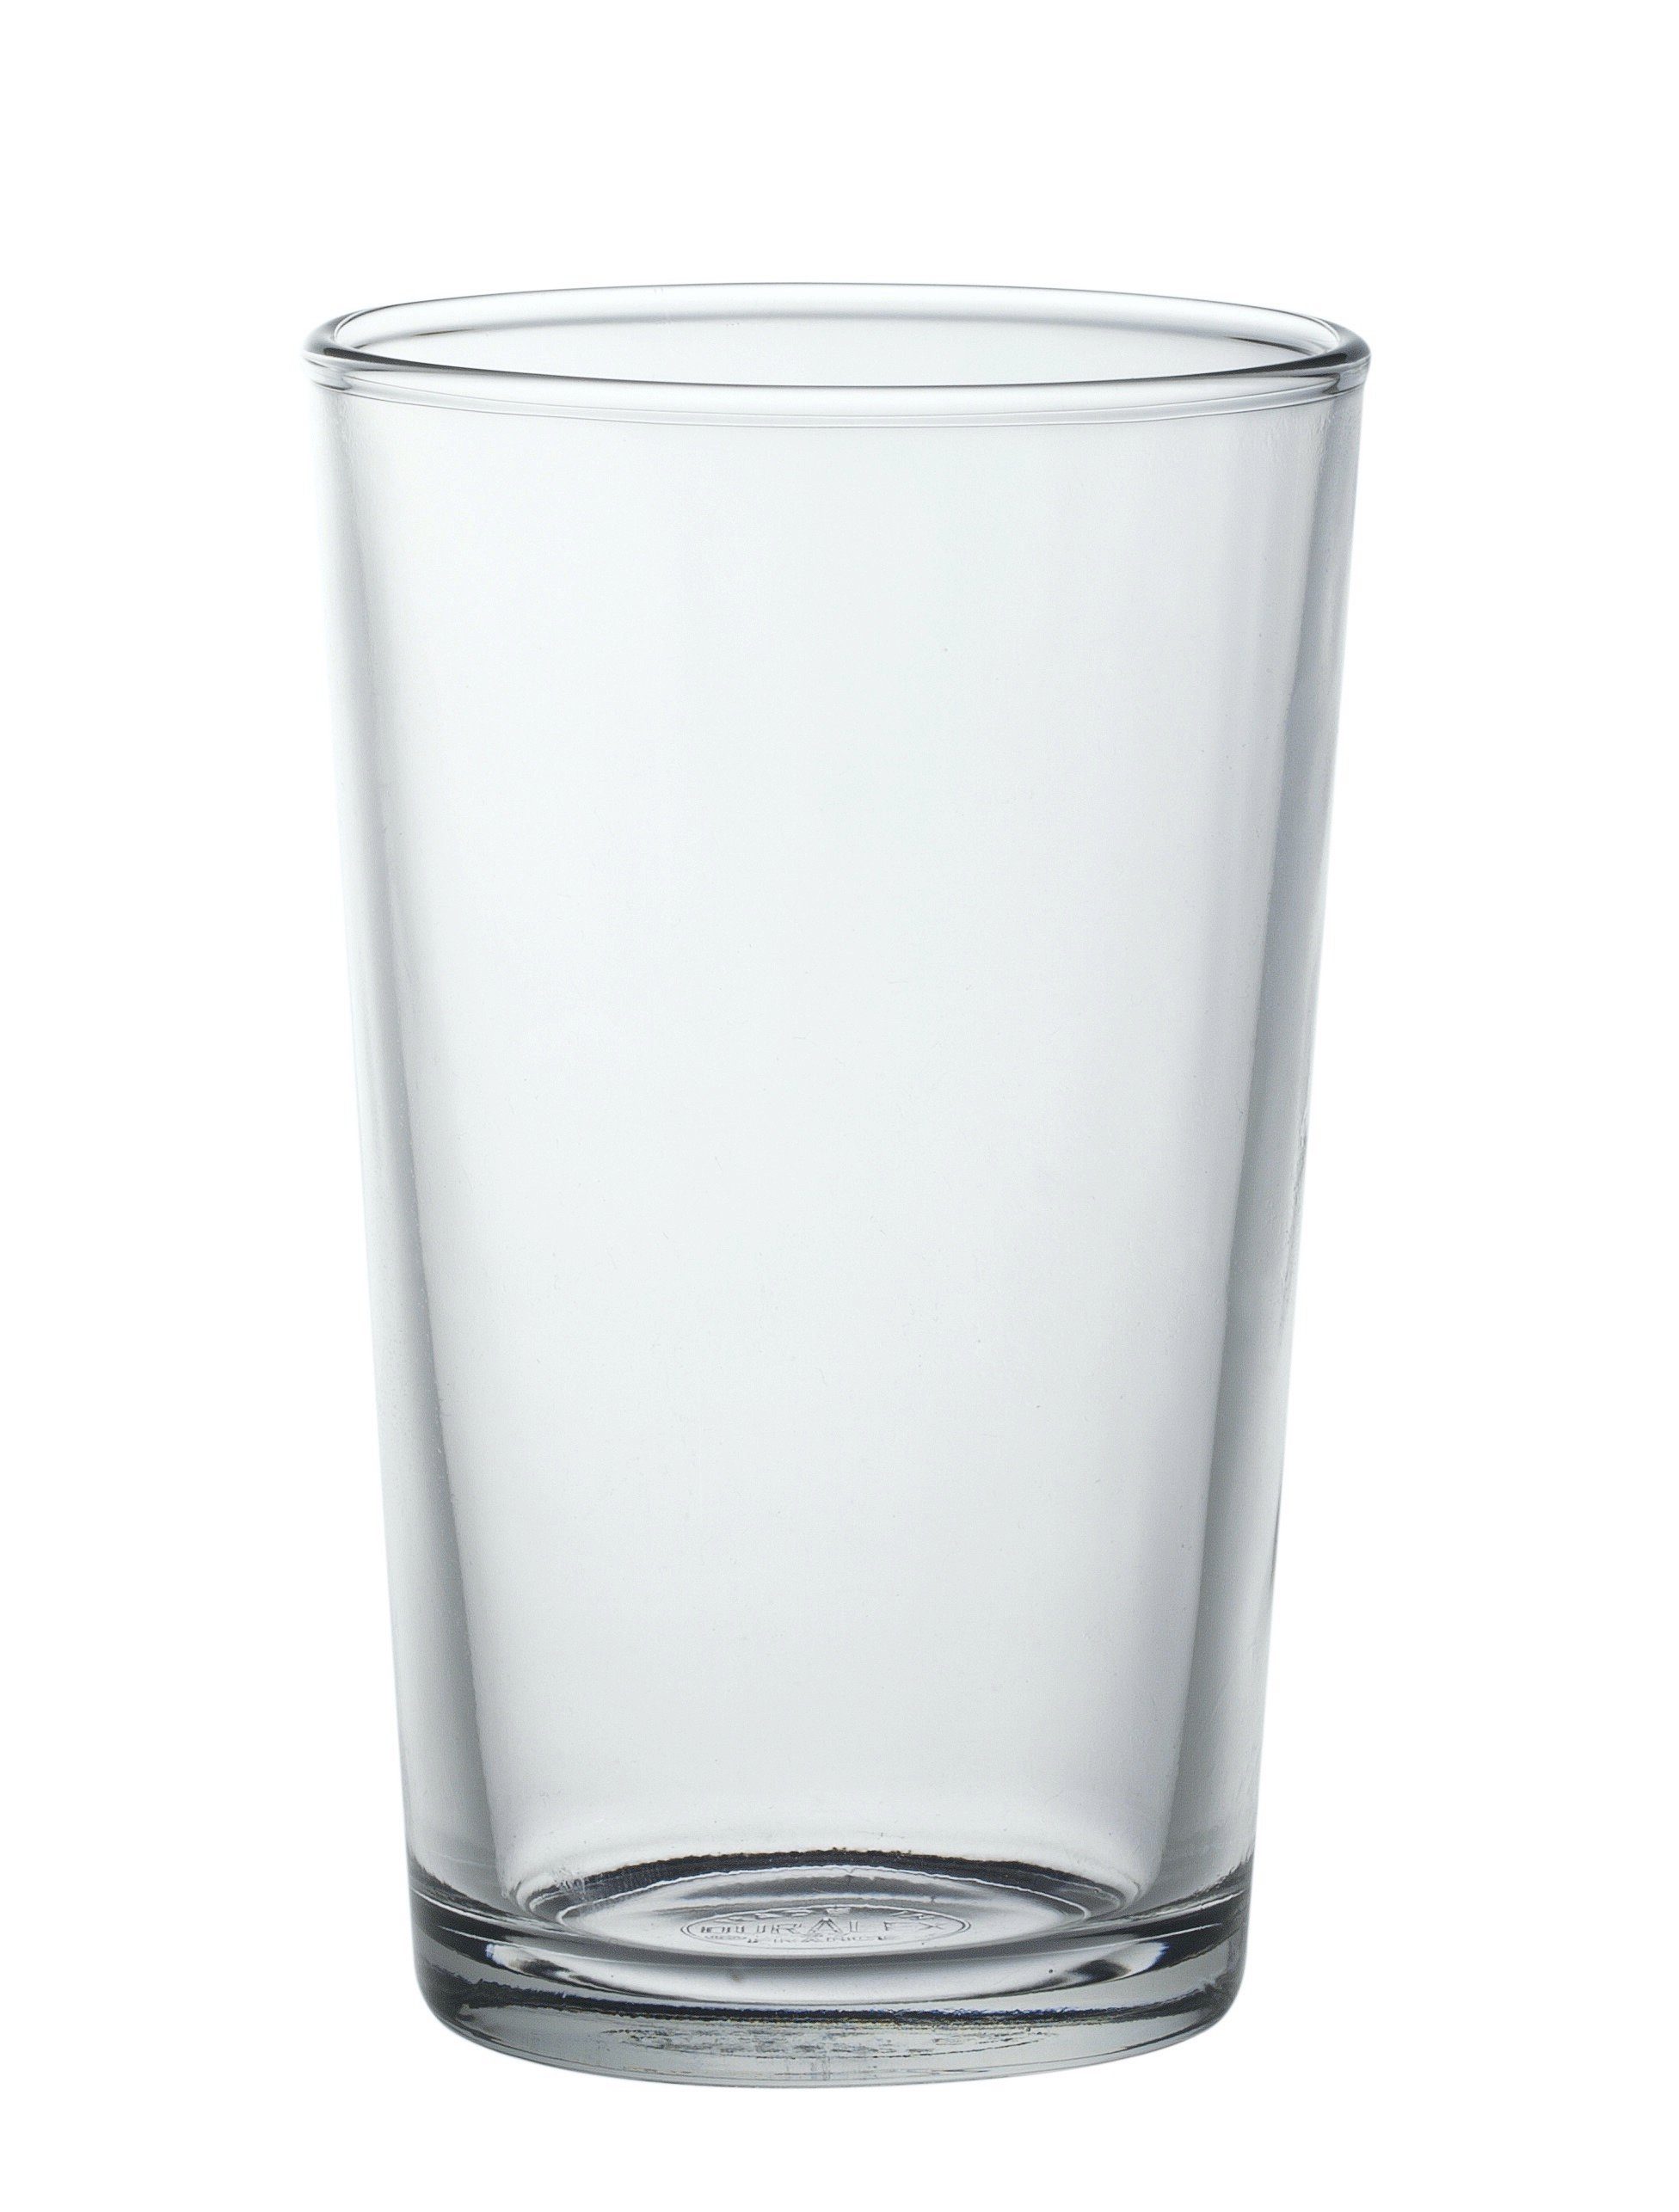 Duralex Tumbler-Glas Chope Unie, Glas gehärtet, Tumbler Trinkglas 280ml Glas gehärtet transparent 6 Stück